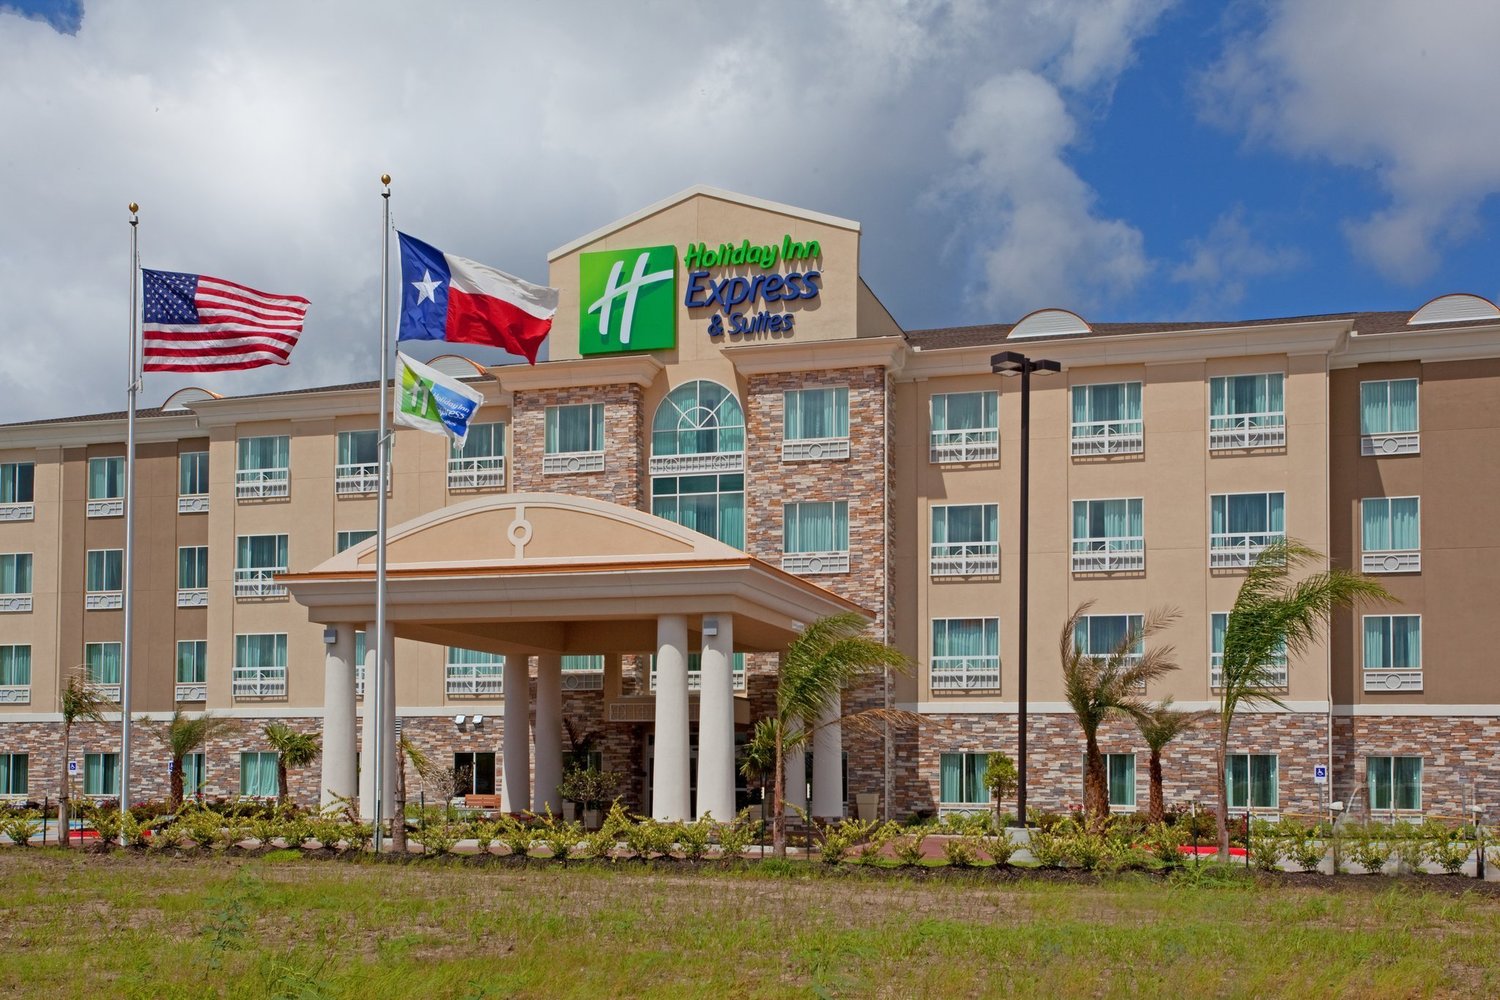 Holiday Inn Express Houston - Galleria Area - Houston, United States